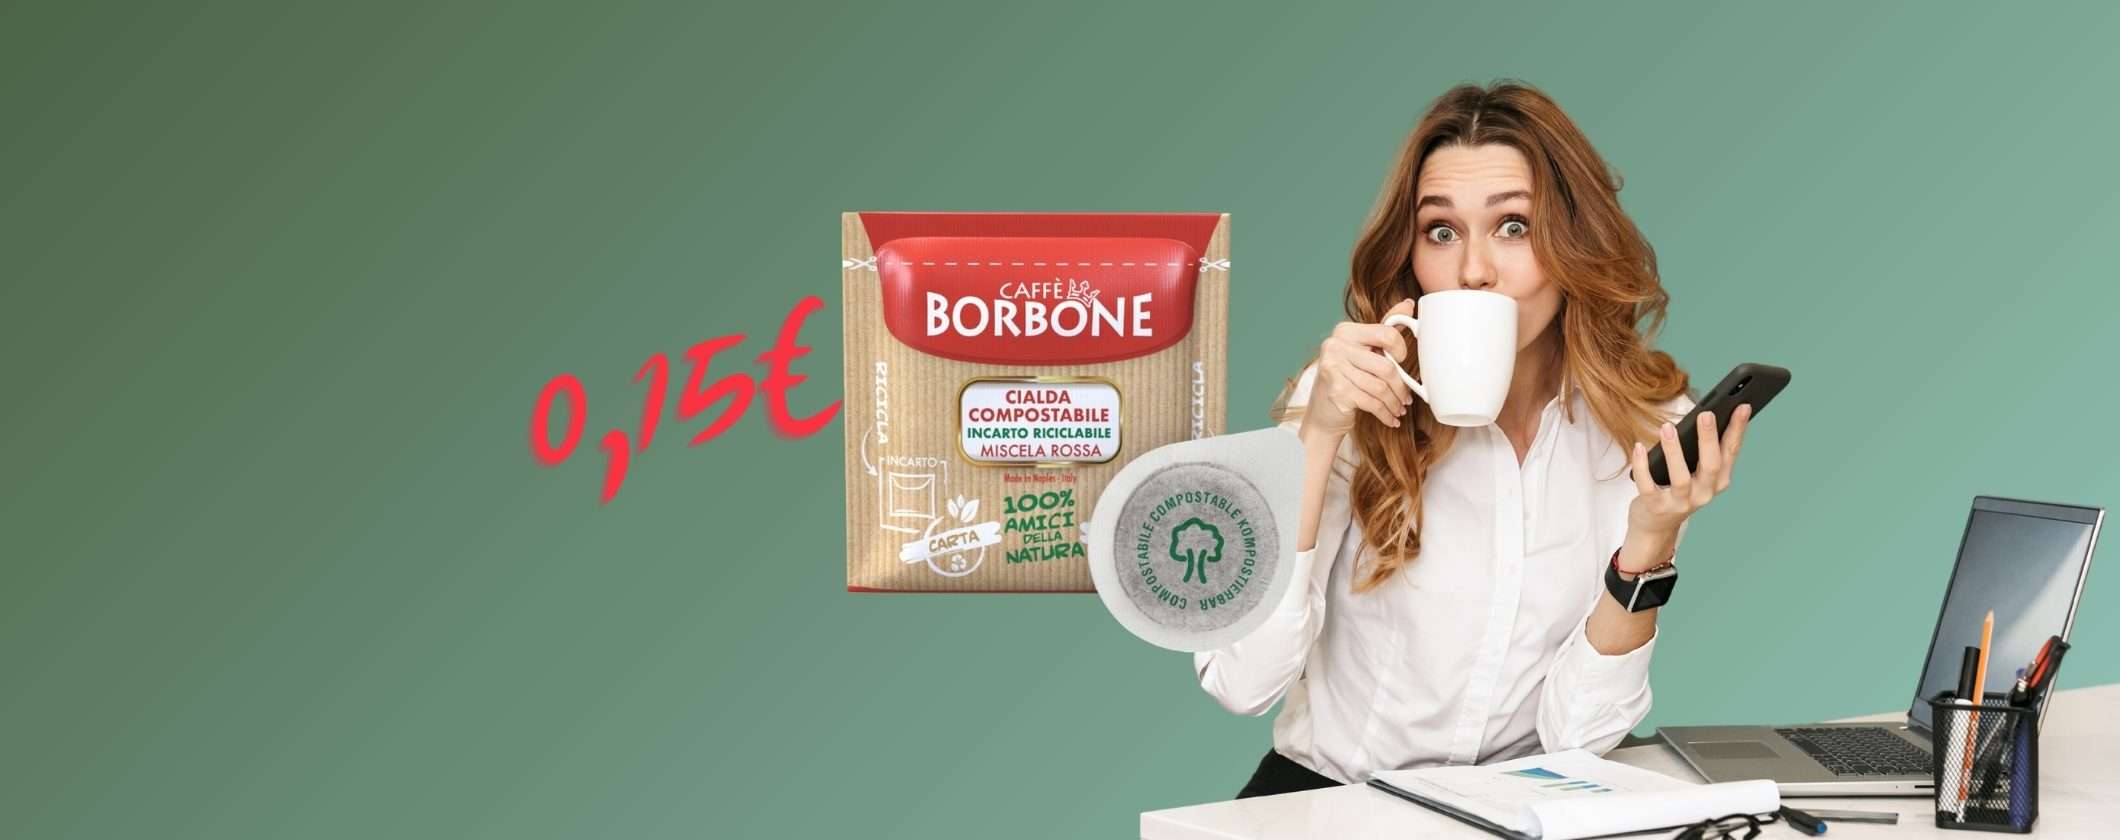 Cialde Caffè Borbone: ESPRESSO FANTASTICO a 0,15€ per unità